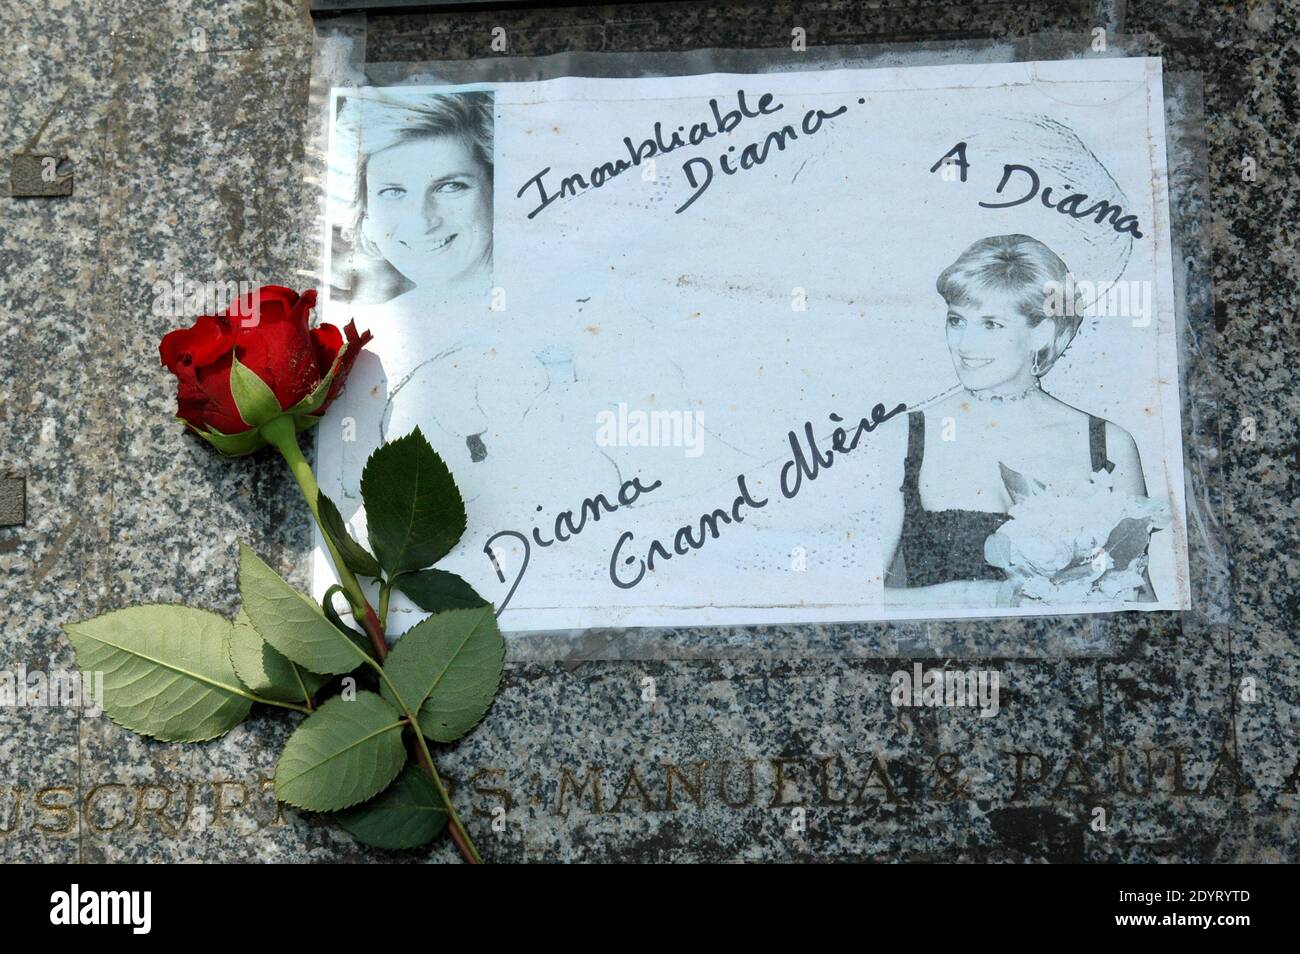 Vista della fiamma della libertà, che è diventata un memoriale non ufficiale della principessa Diana, è raffigurata nel 16 ° anniversario della sua morte, vicino al sito del crash auto nel tunnel Pont de l'Alma, a Parigi, Francia il 26 agosto 2013. Foto di Alain Apaydin/ABACAPRESS.COM Foto Stock